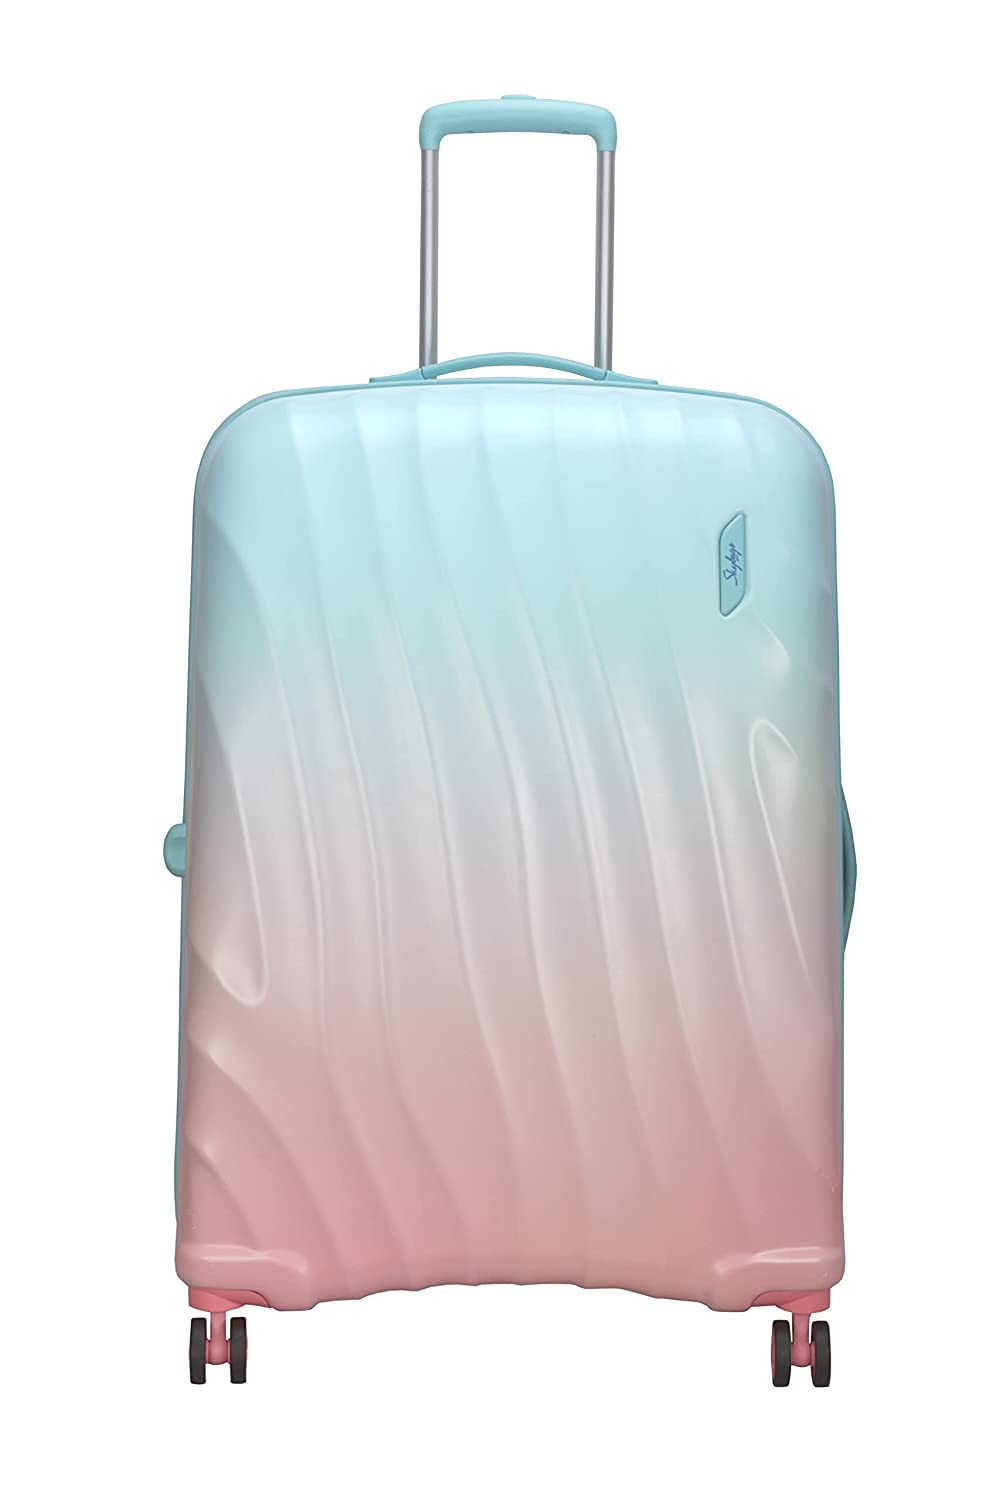 amazon suitcases
